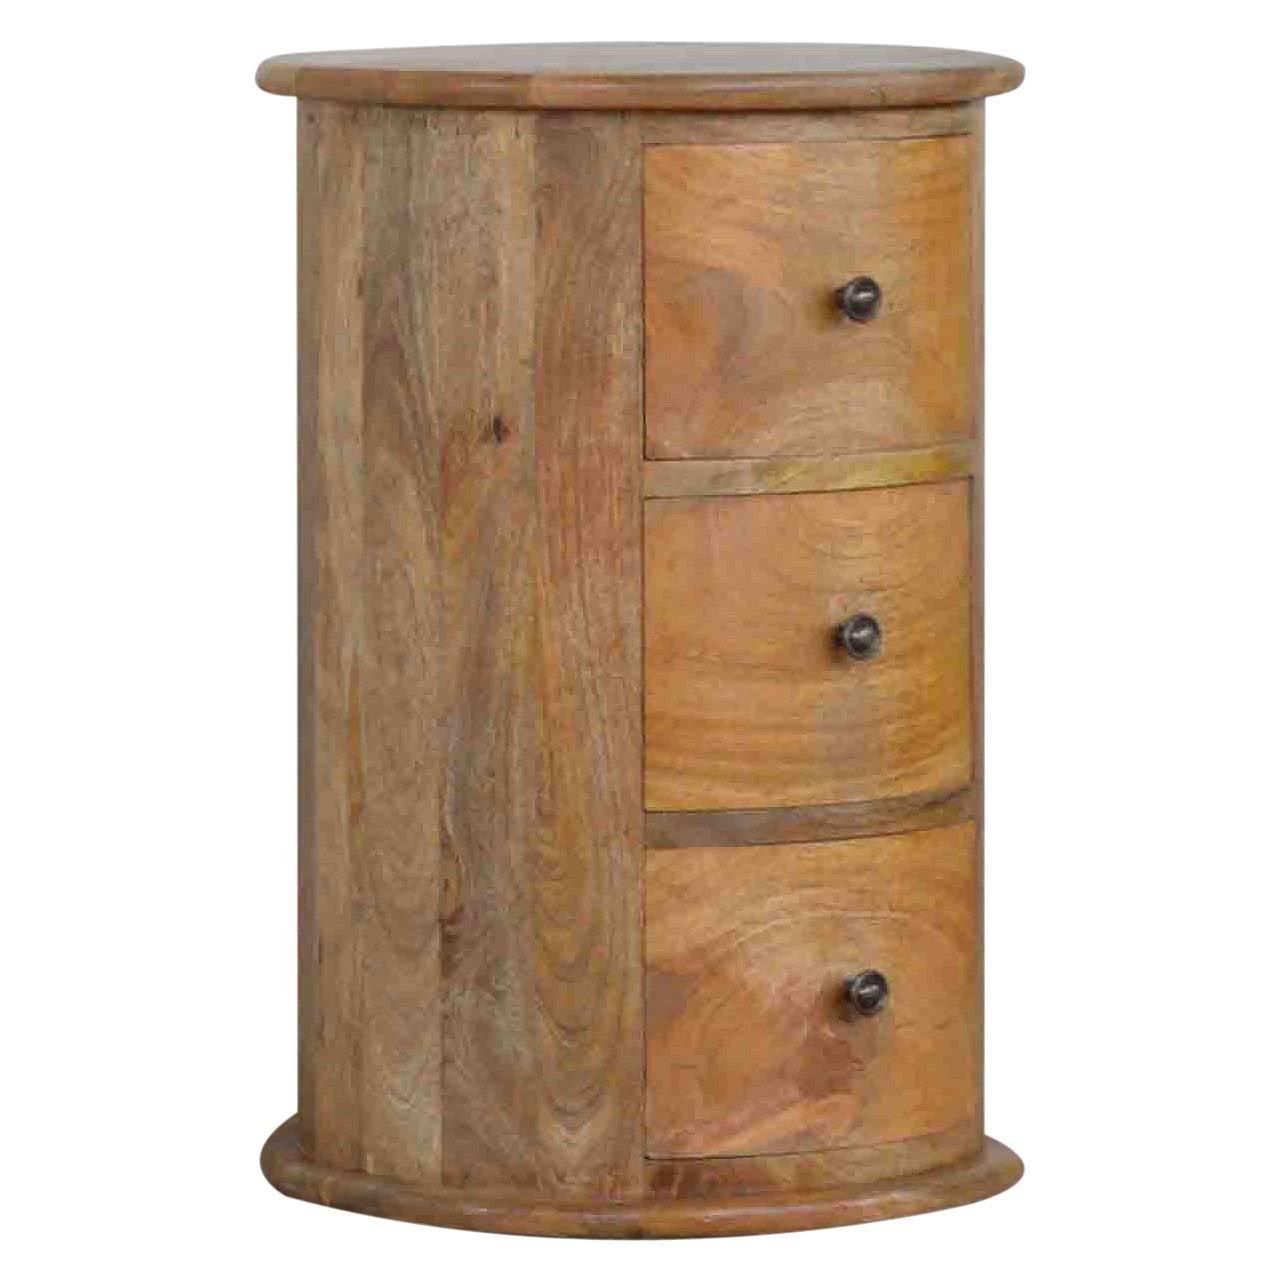 3 drawer drum chest - crimblefest furniture - image 4